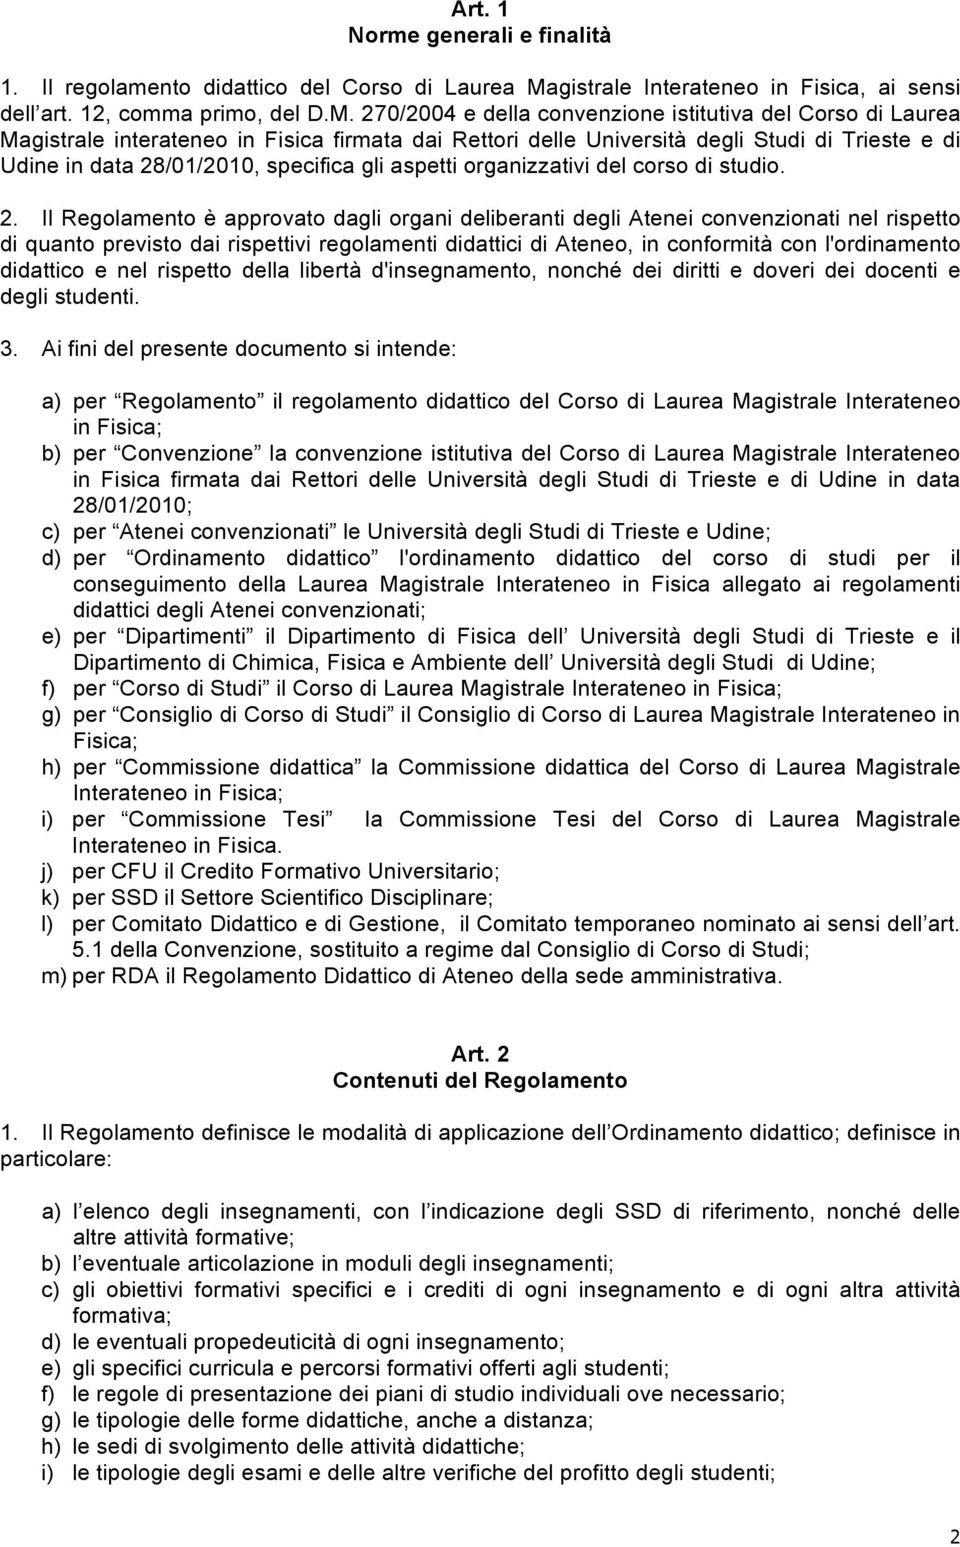 270/2004 e della convenzione istitutiva del Corso di Laurea Magistrale interateneo in Fisica firmata dai Rettori delle Università degli Studi di Trieste e di Udine in data 28/01/2010, specifica gli